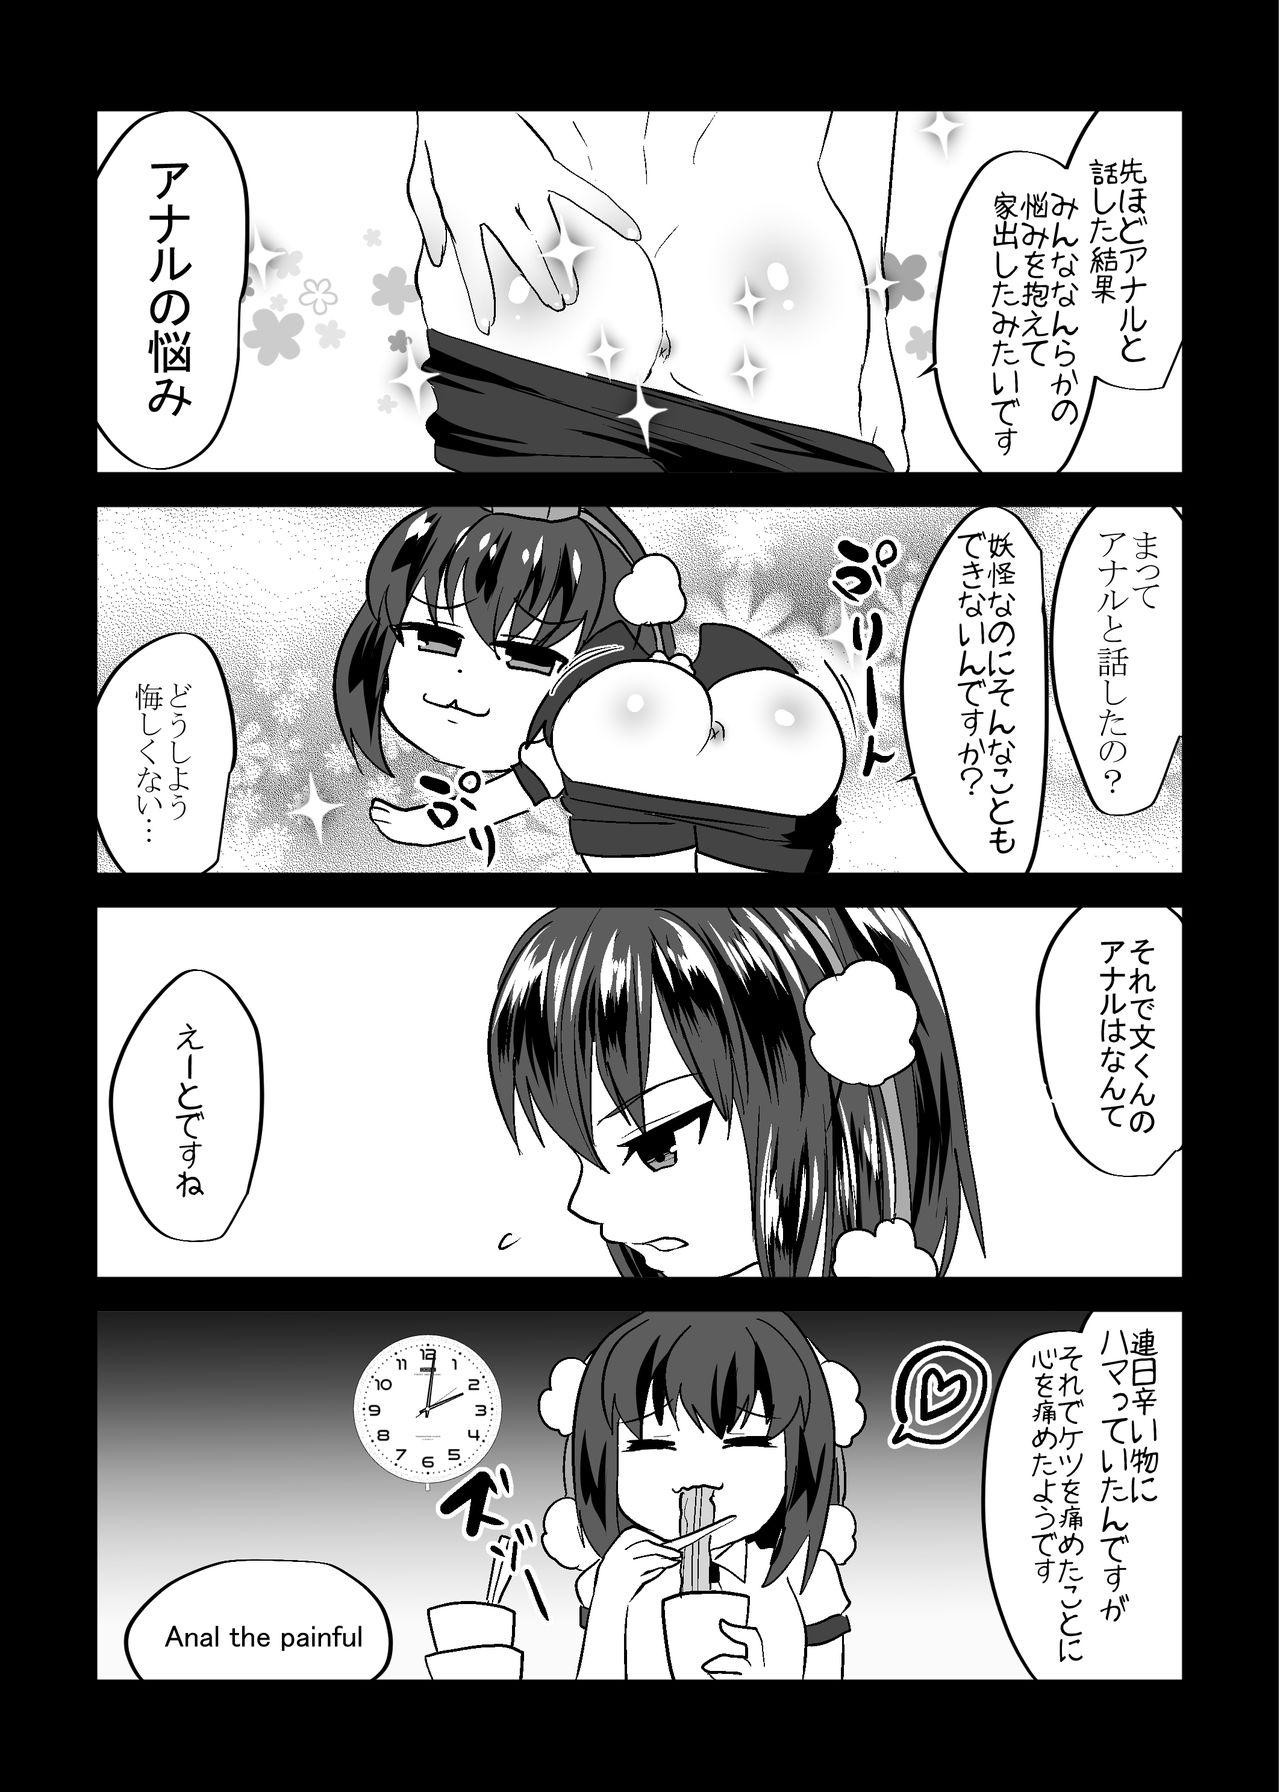 Cumfacial Uchi no * ga iede shimashite - Touhou project Spank - Page 11